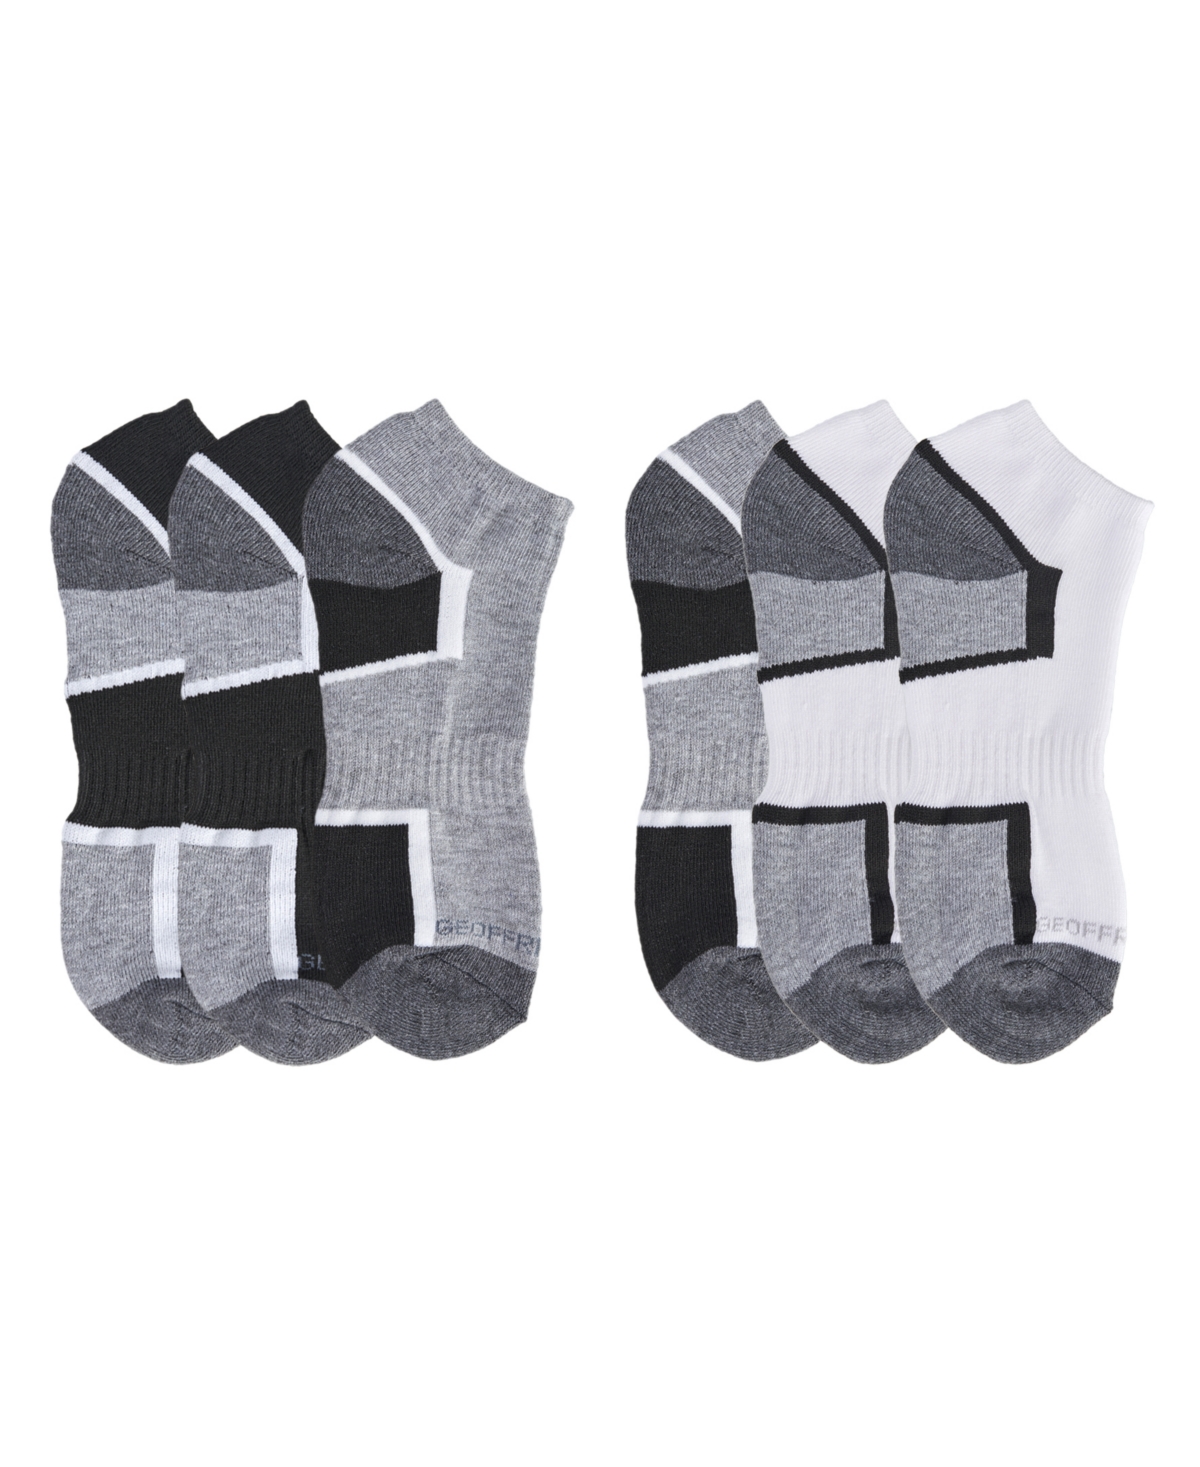 Geoffrey Beene Men's Cushioned Low Cut Socks, Pack of 6